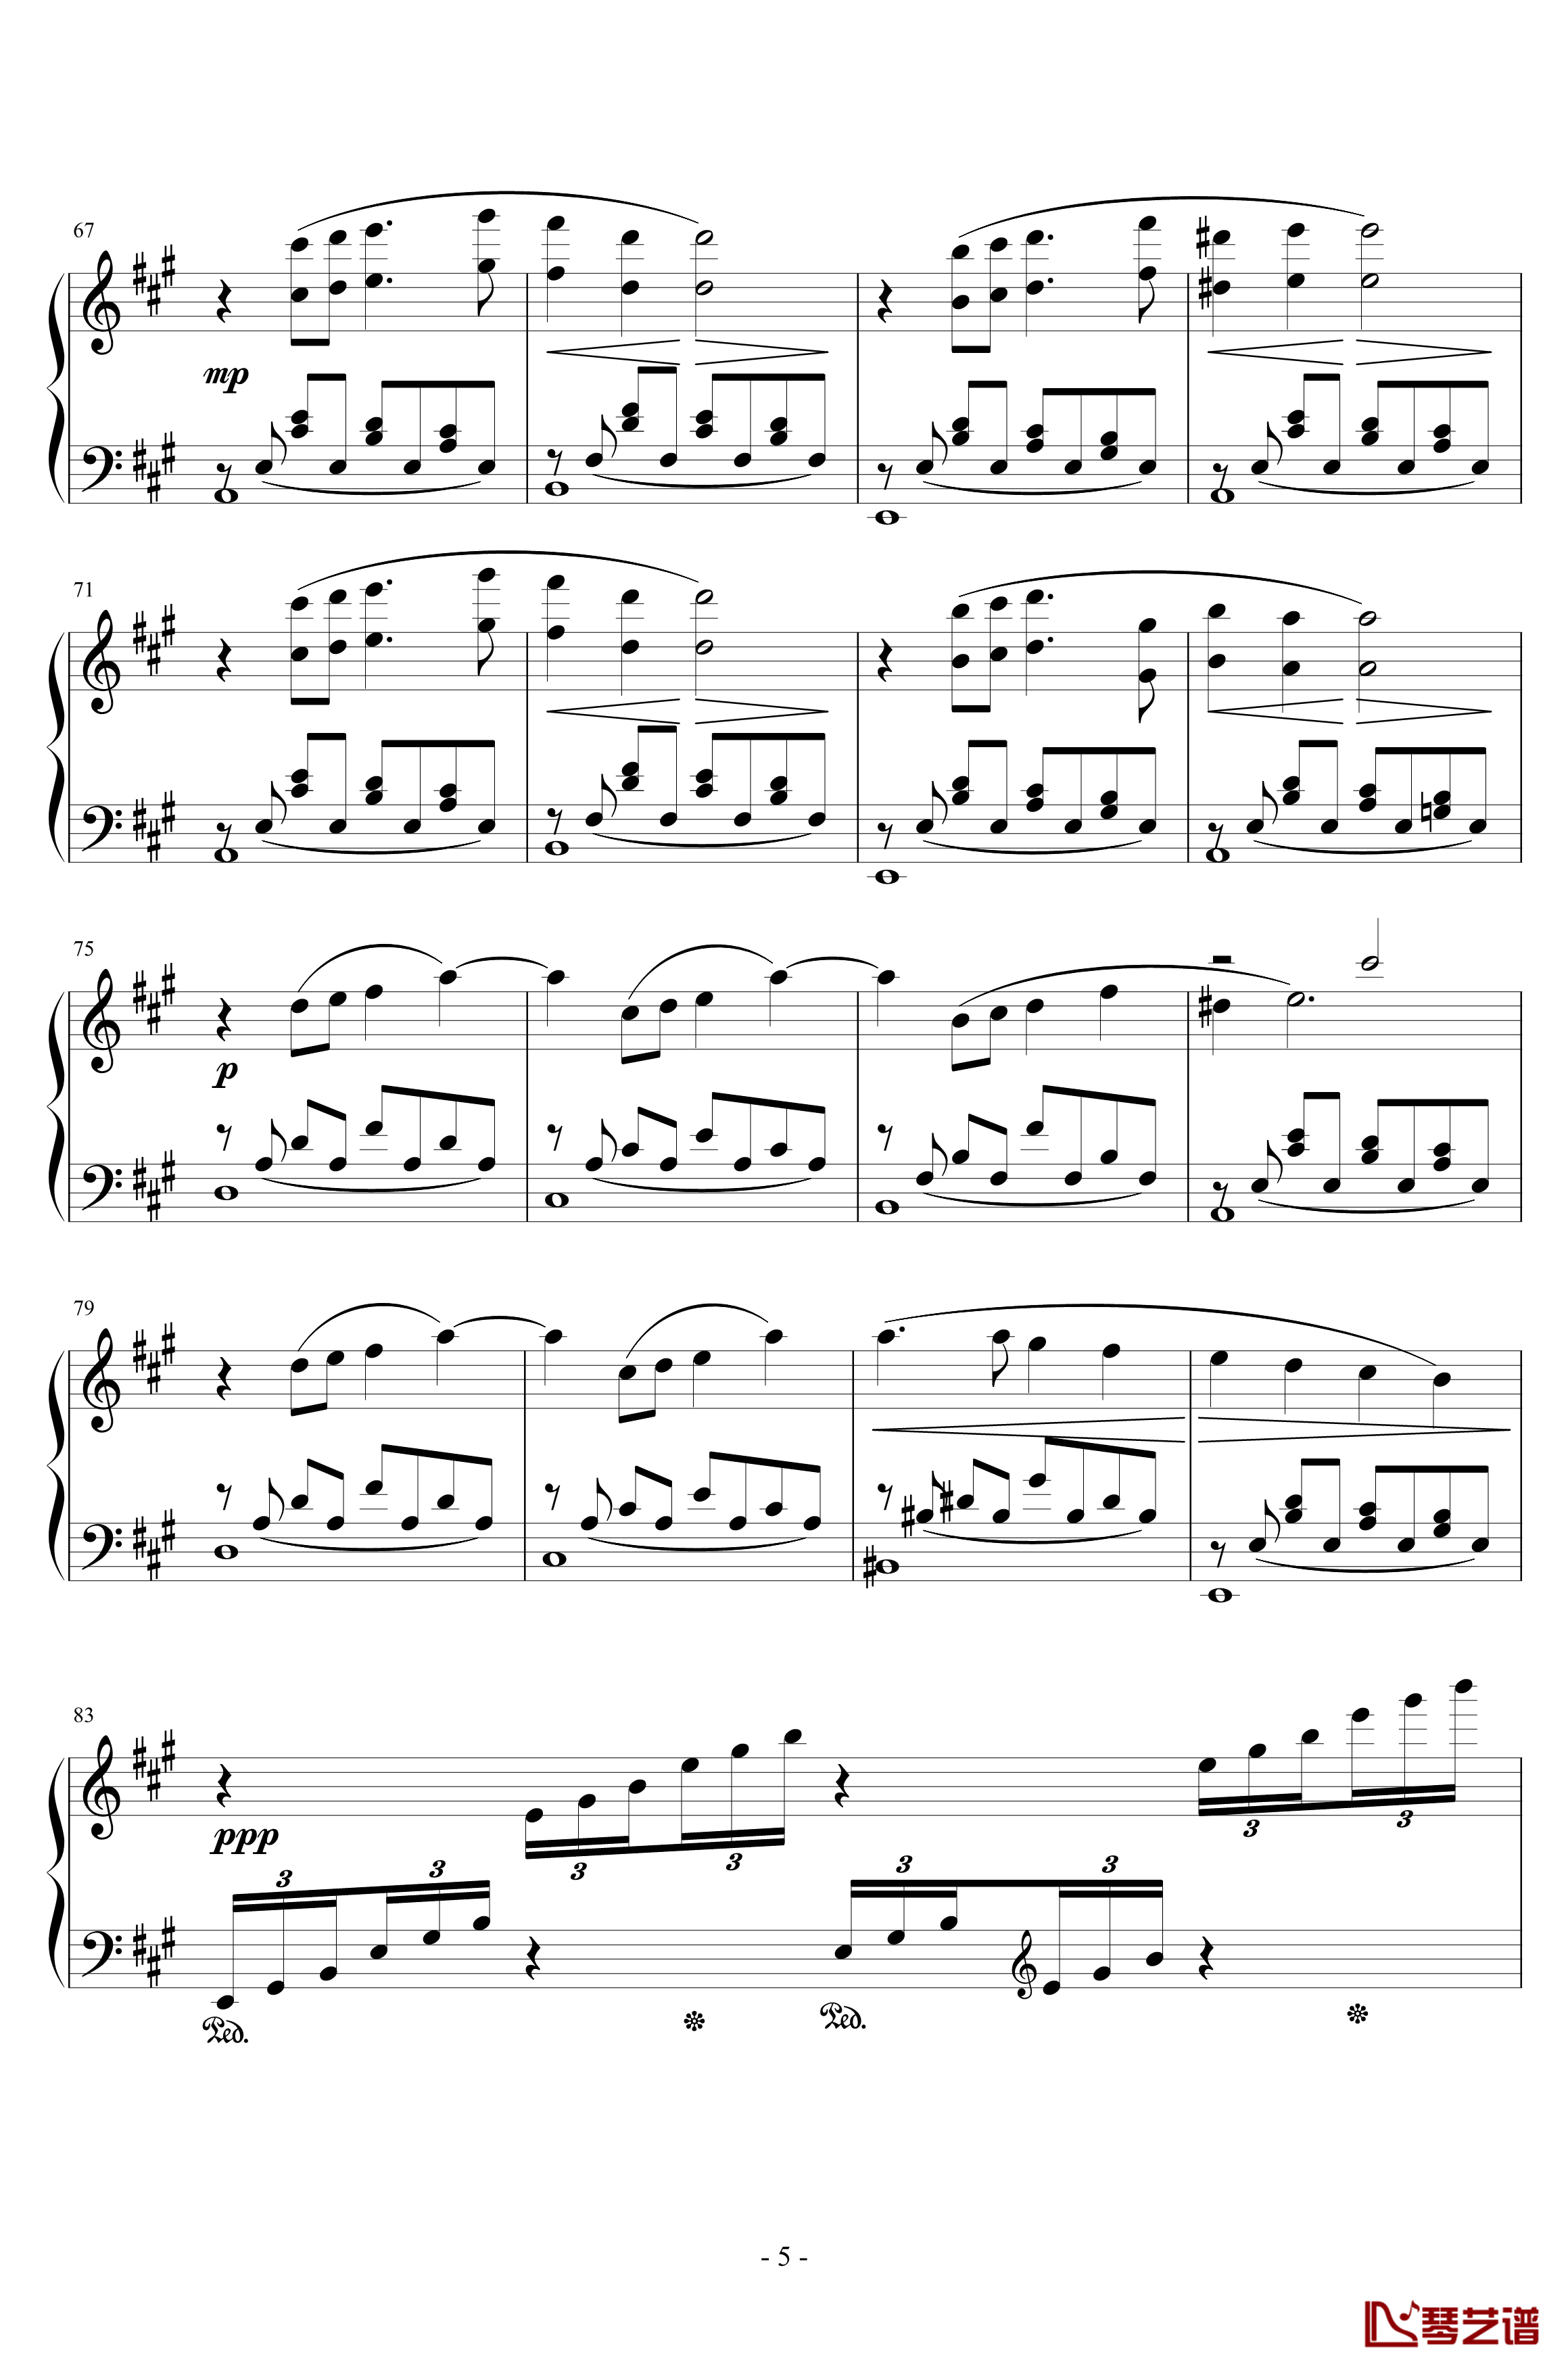 最终幻想8花园主题音乐钢琴谱-植松伸夫5